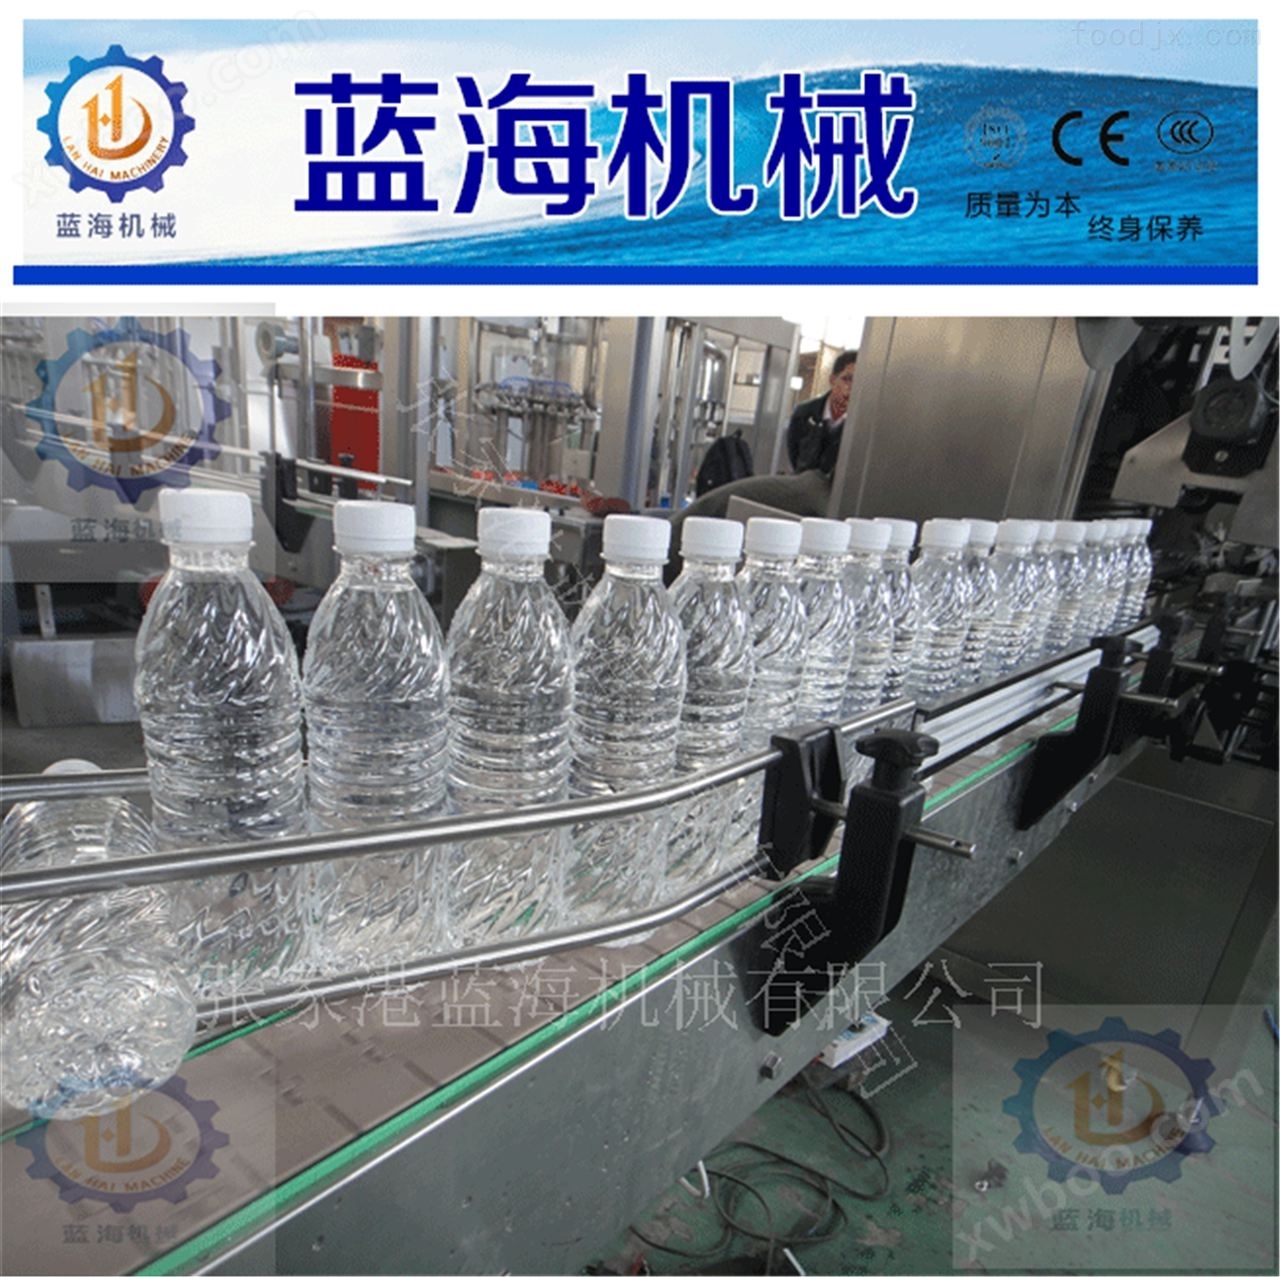 瓶装水灌装设备生产厂家张家港蓝海机械